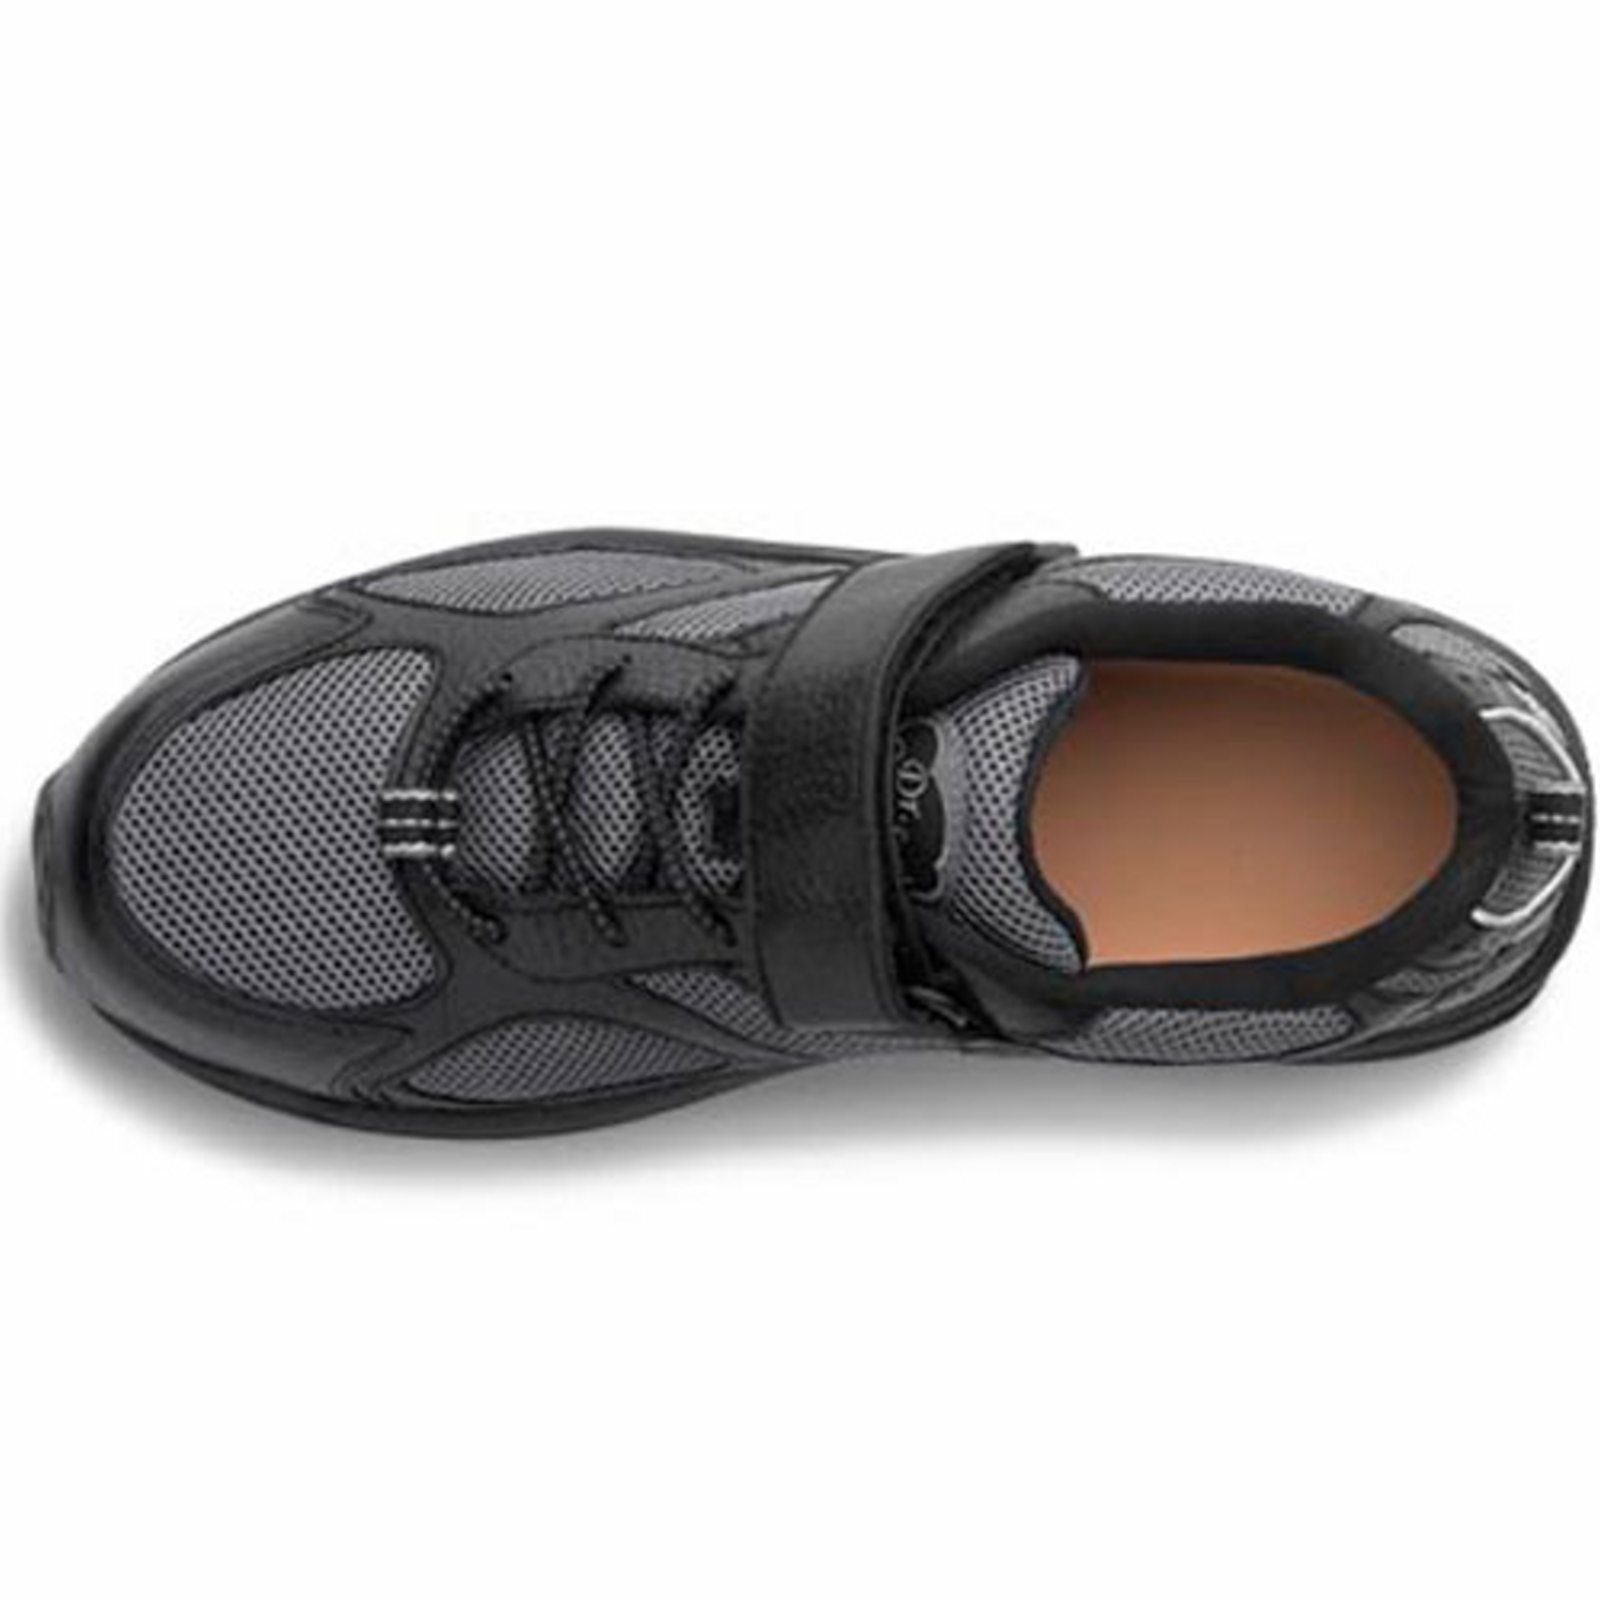 Dr. Comfort Endurance Men's Athletic Shoe: 9 Wide (E/2E) Black Elastic Lace w/Strap - image 5 of 5